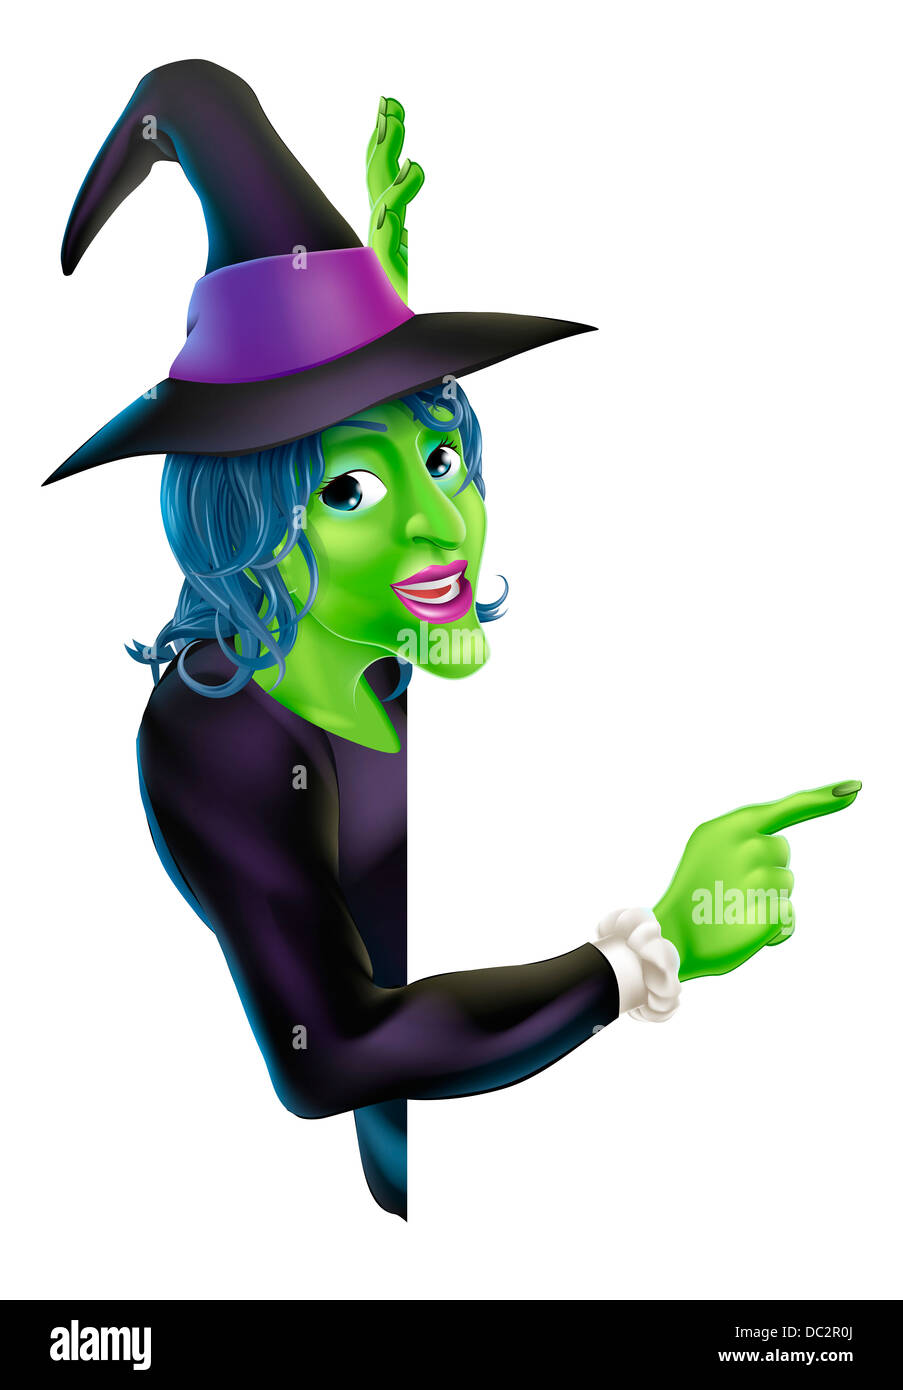 Une illustration d'un dessin animé sympathique sorcière Halloween furtivement de caractère autour d'une bannière et de pointage Banque D'Images